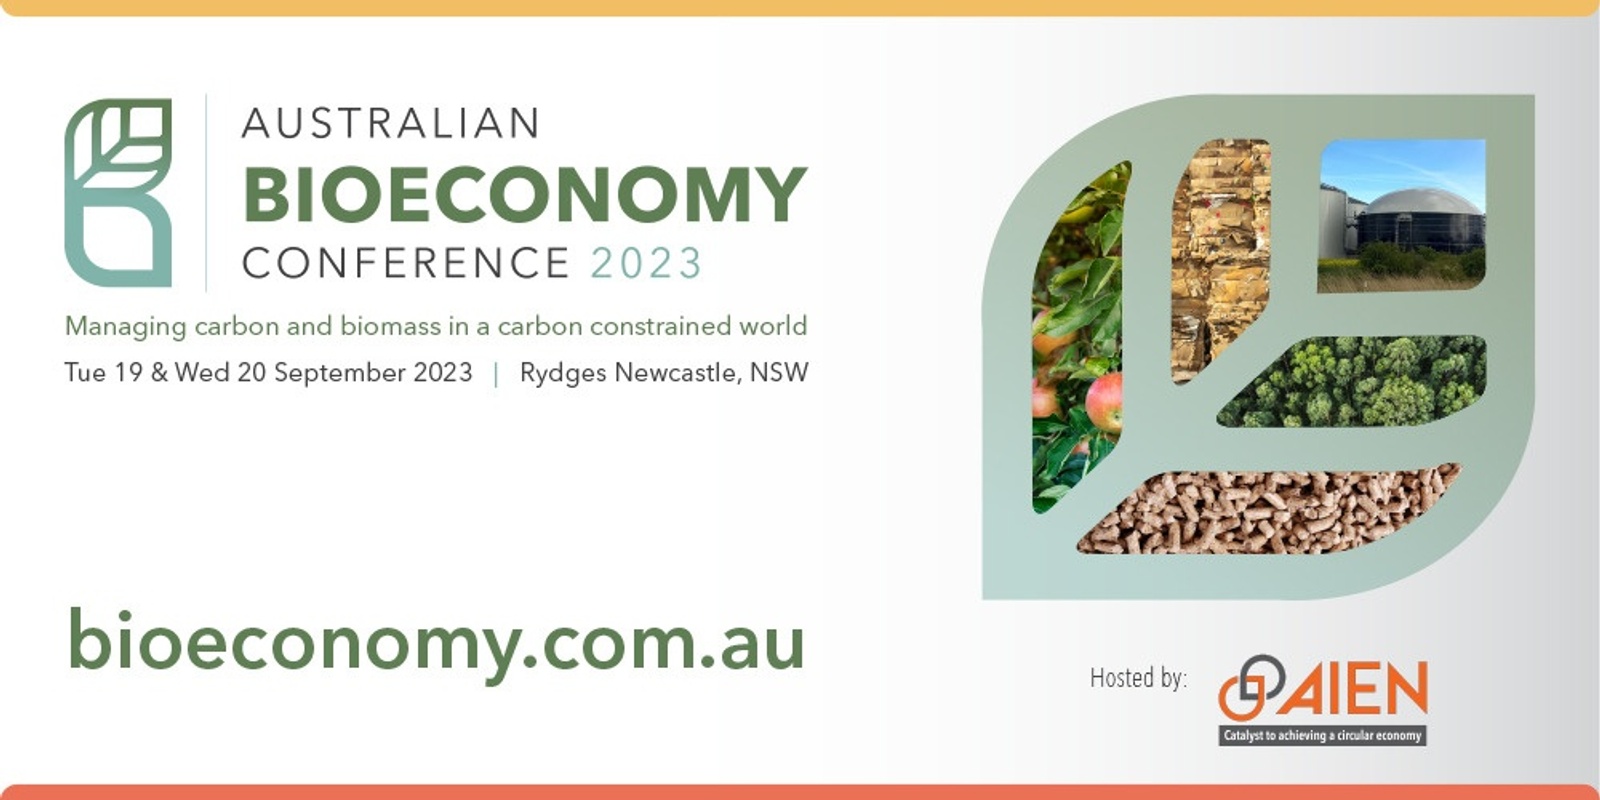 Australian Bioeconomy Conference 2023